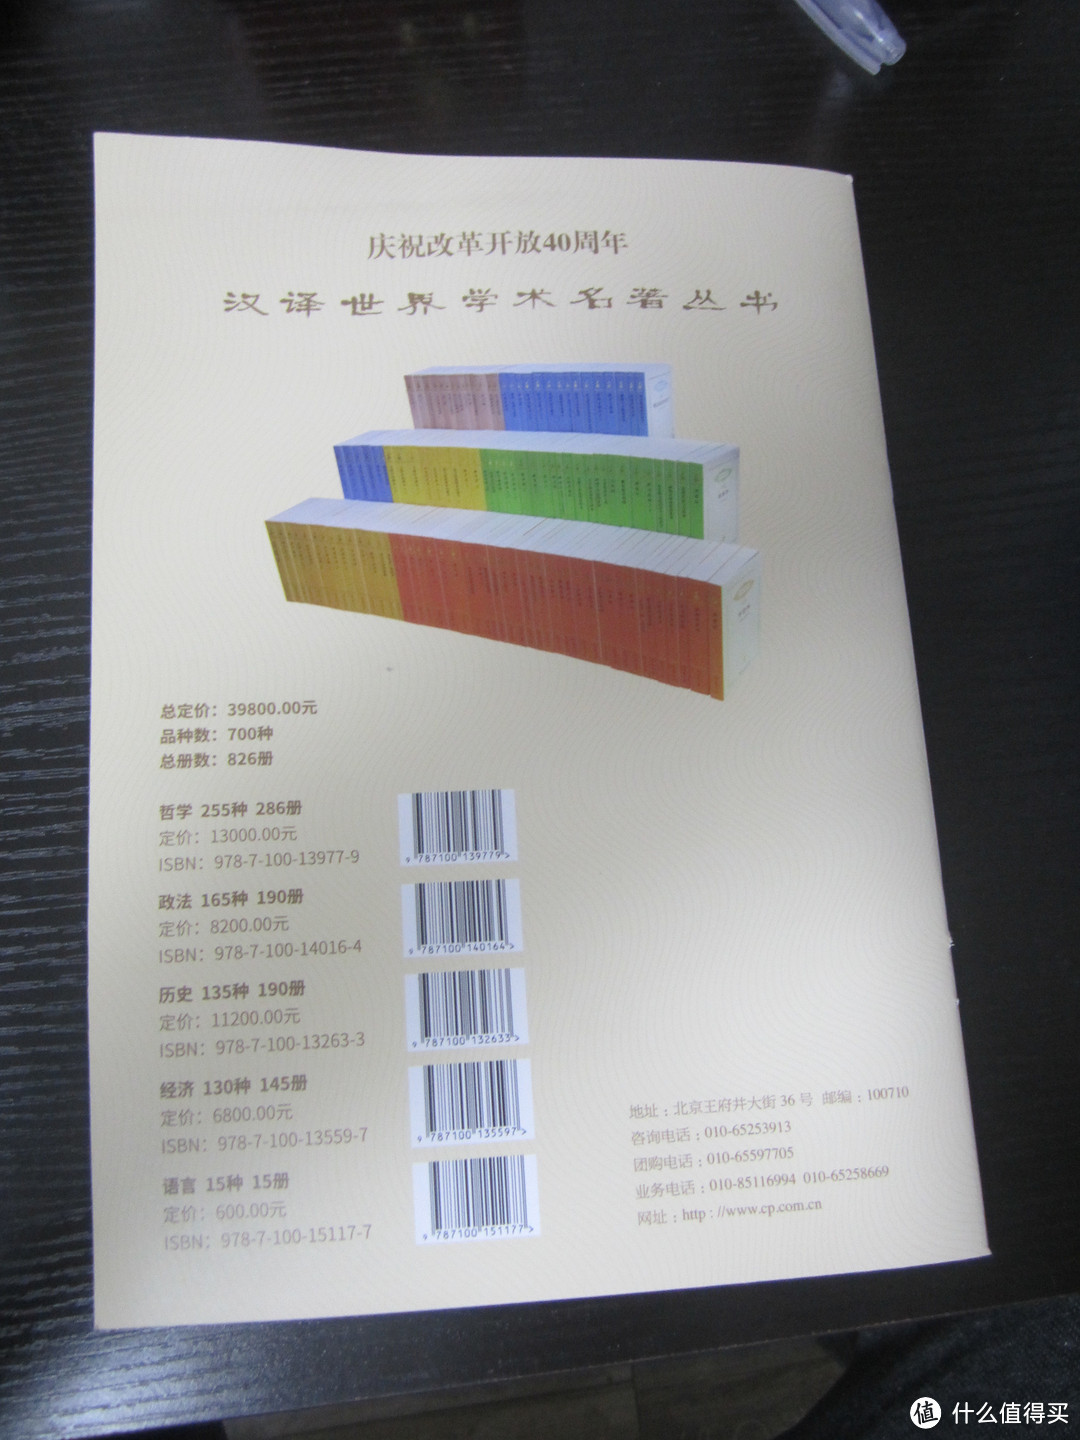 2018年北京图书订货会见闻（1号馆·中央出版机构）